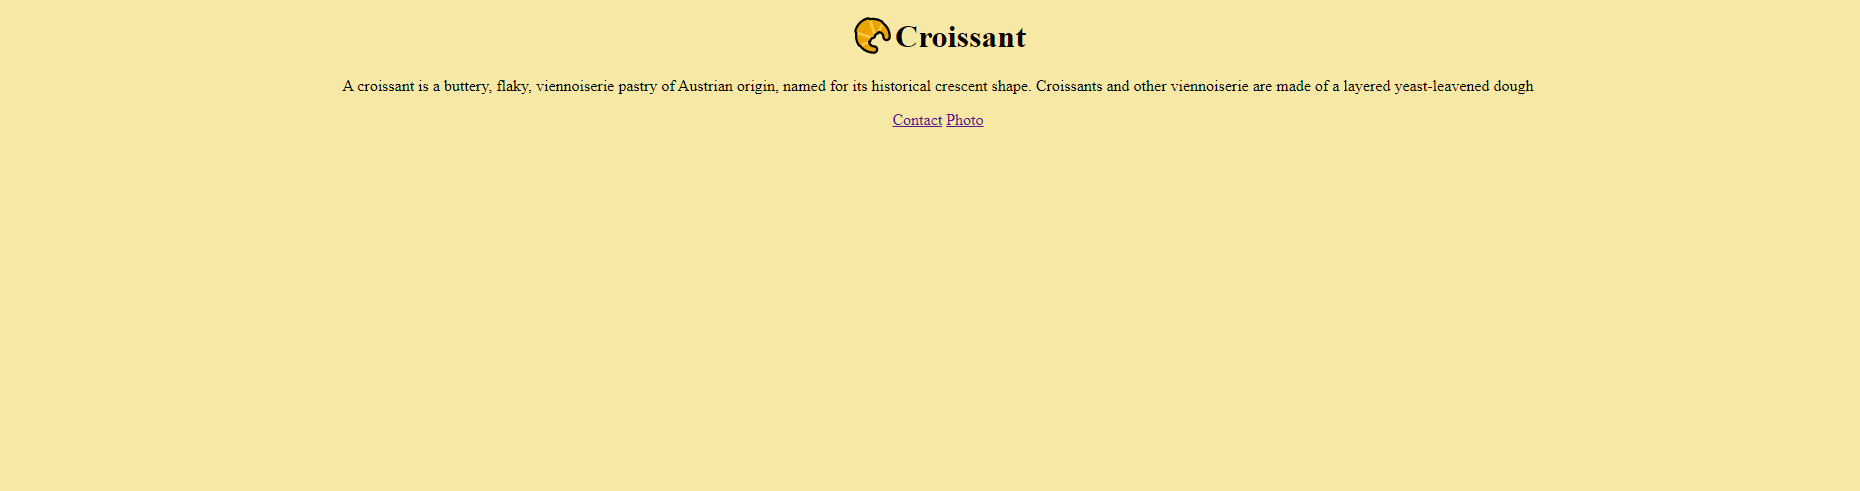 Croissant webpage